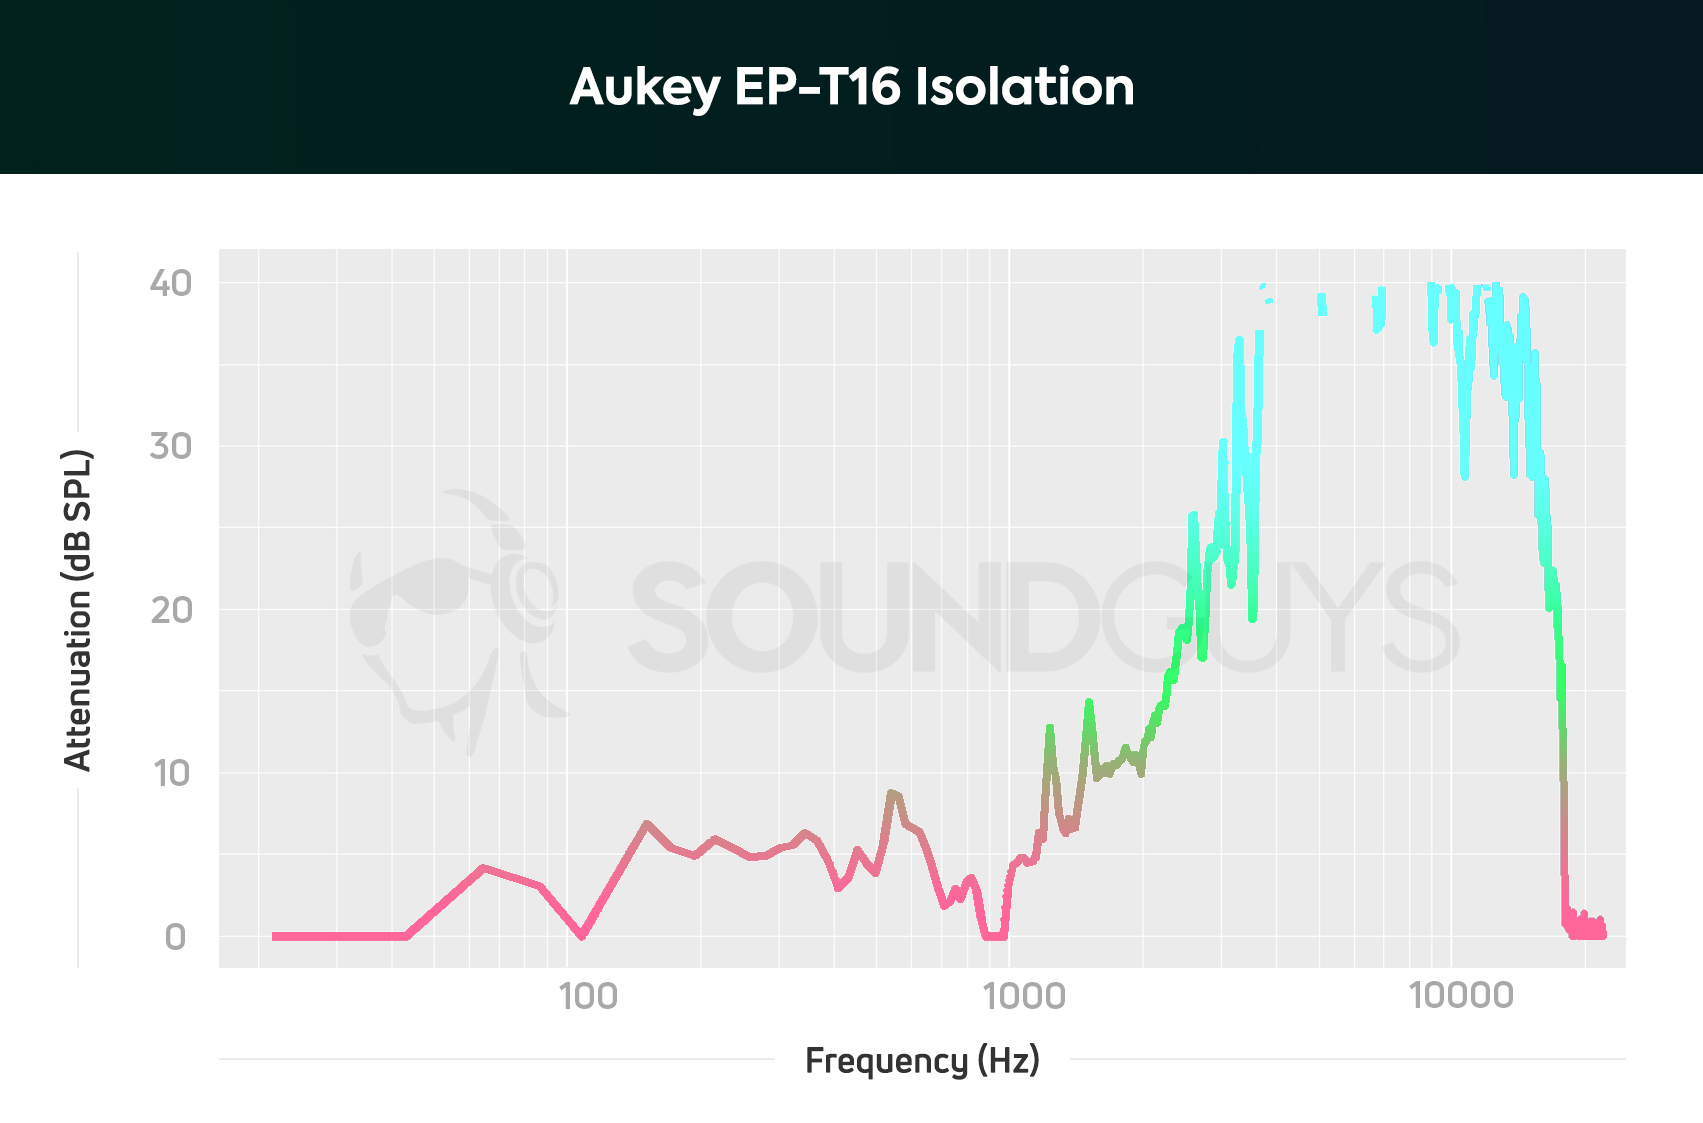 Aukey EP-T16 isolation chart.